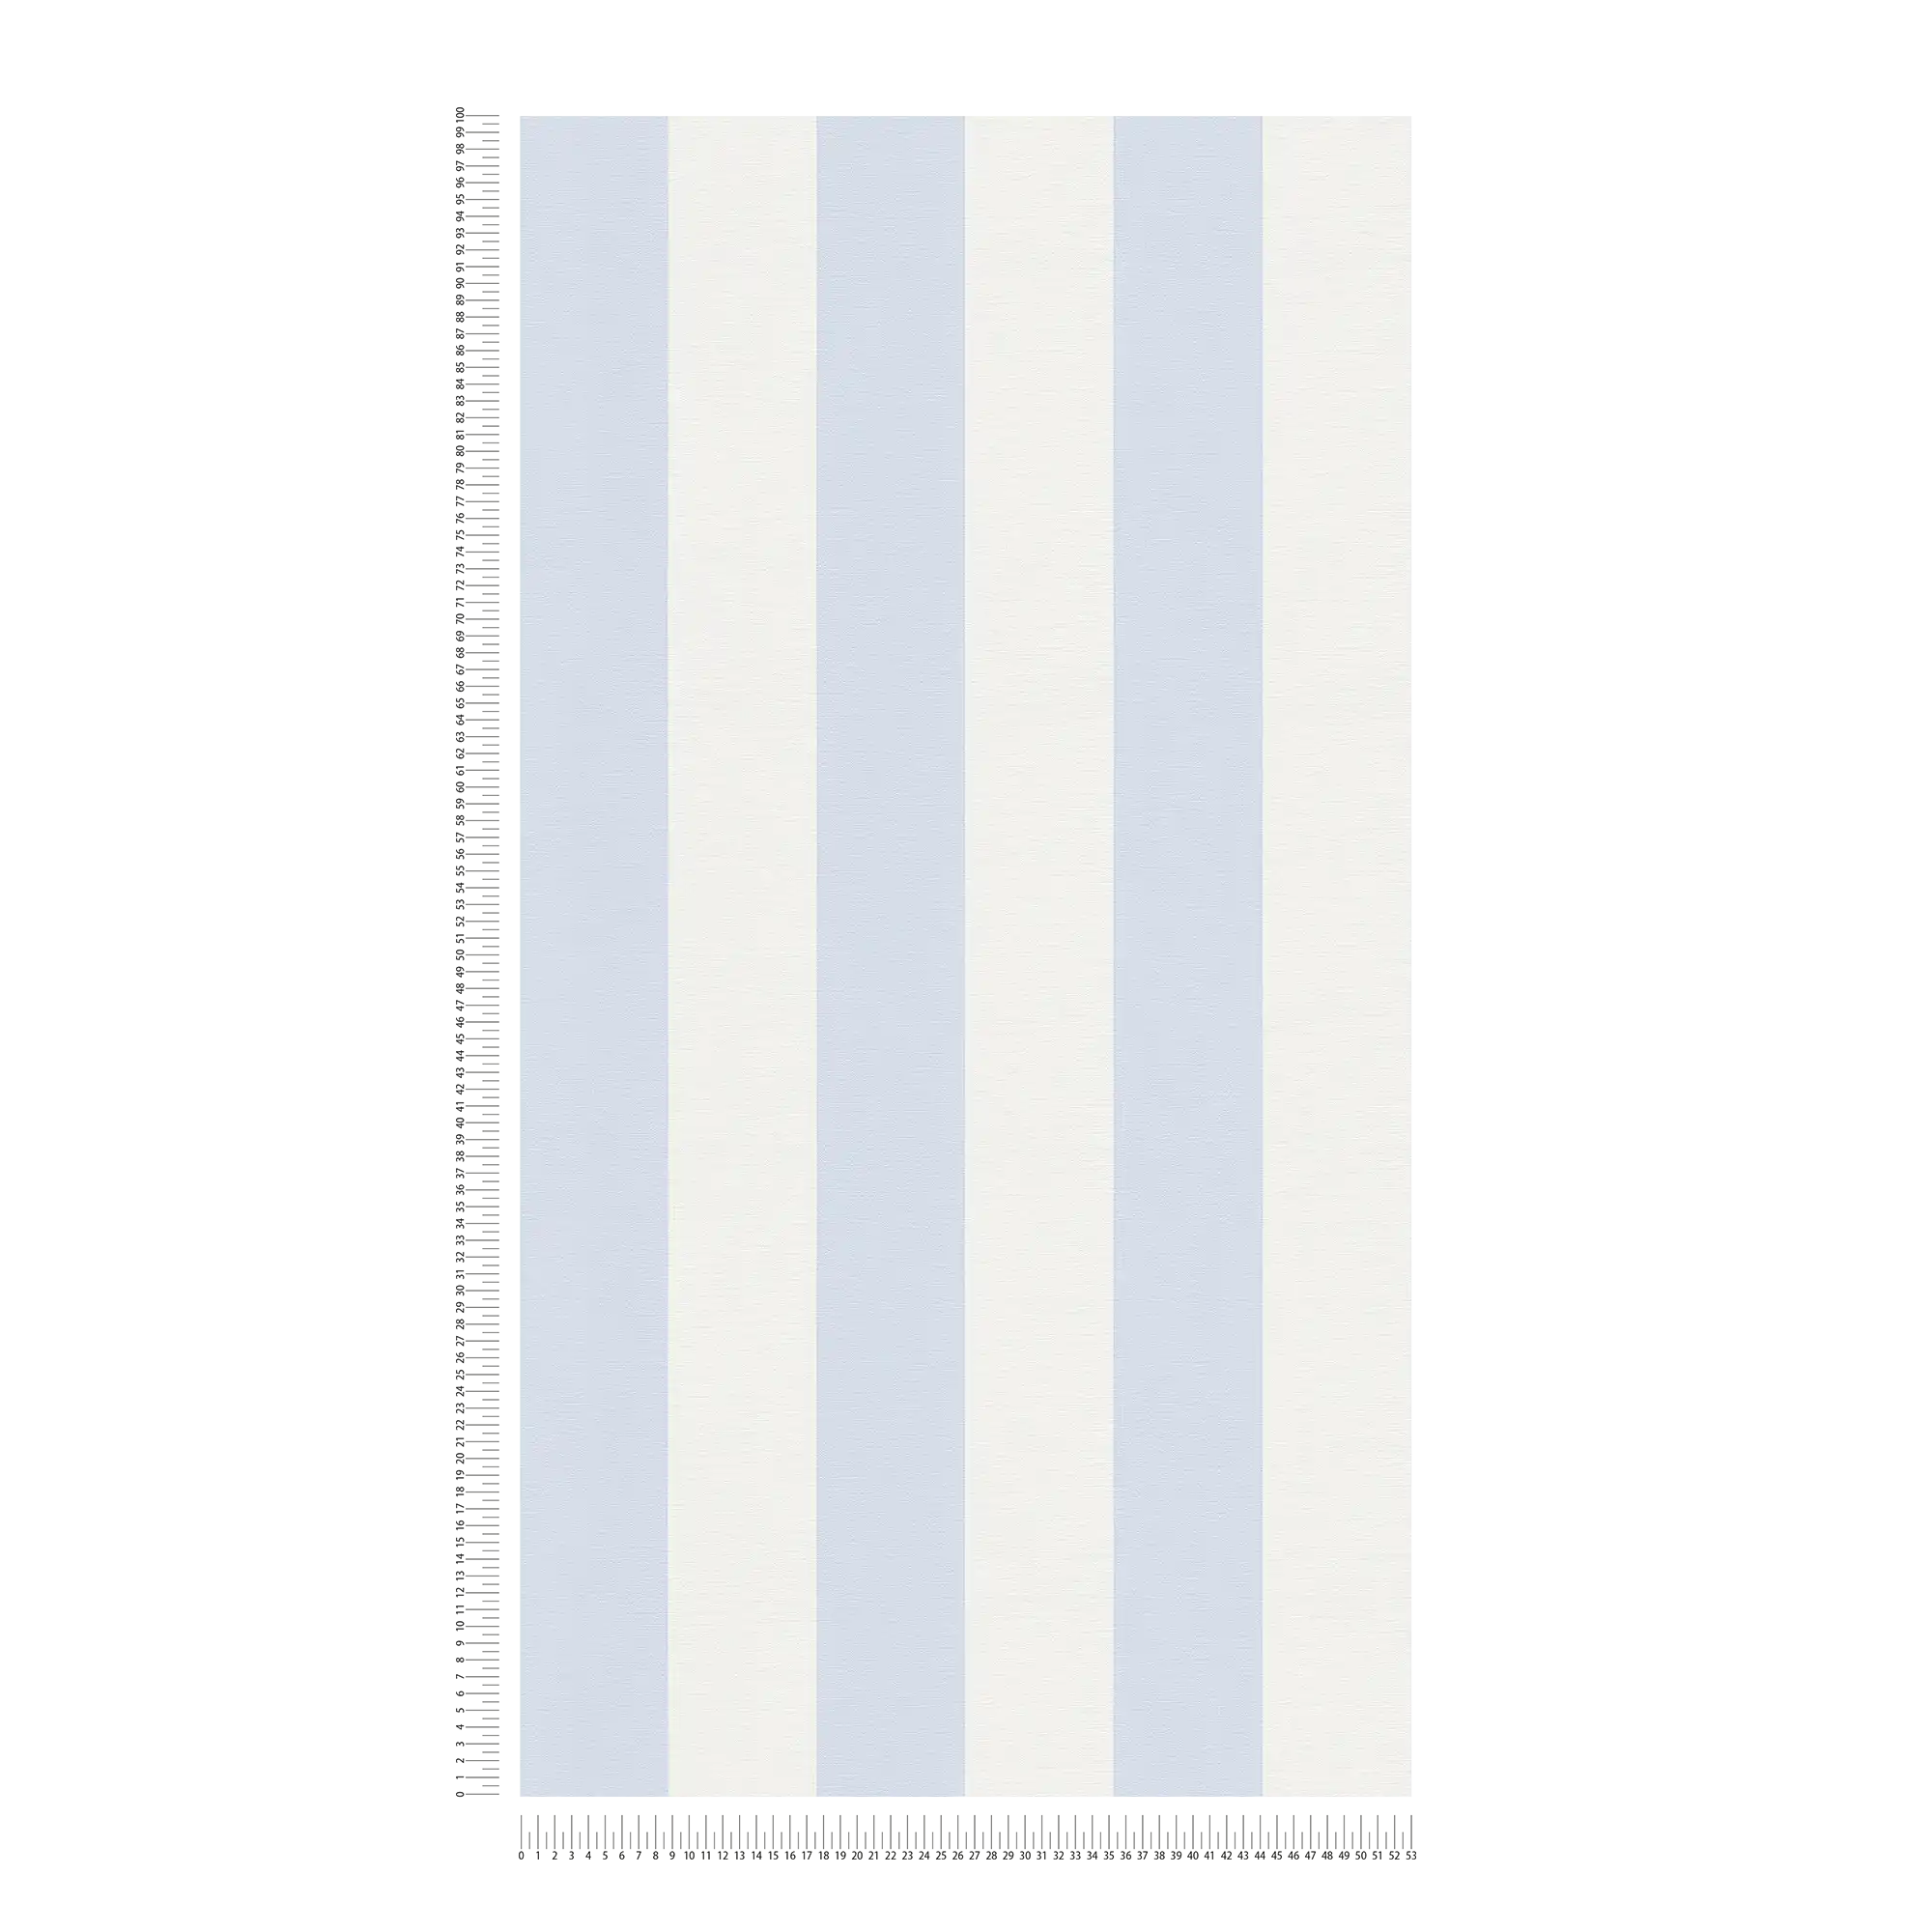             Papier peint à rayures en bloc avec aspect textile pour un design jeune - bleu, blanc
        